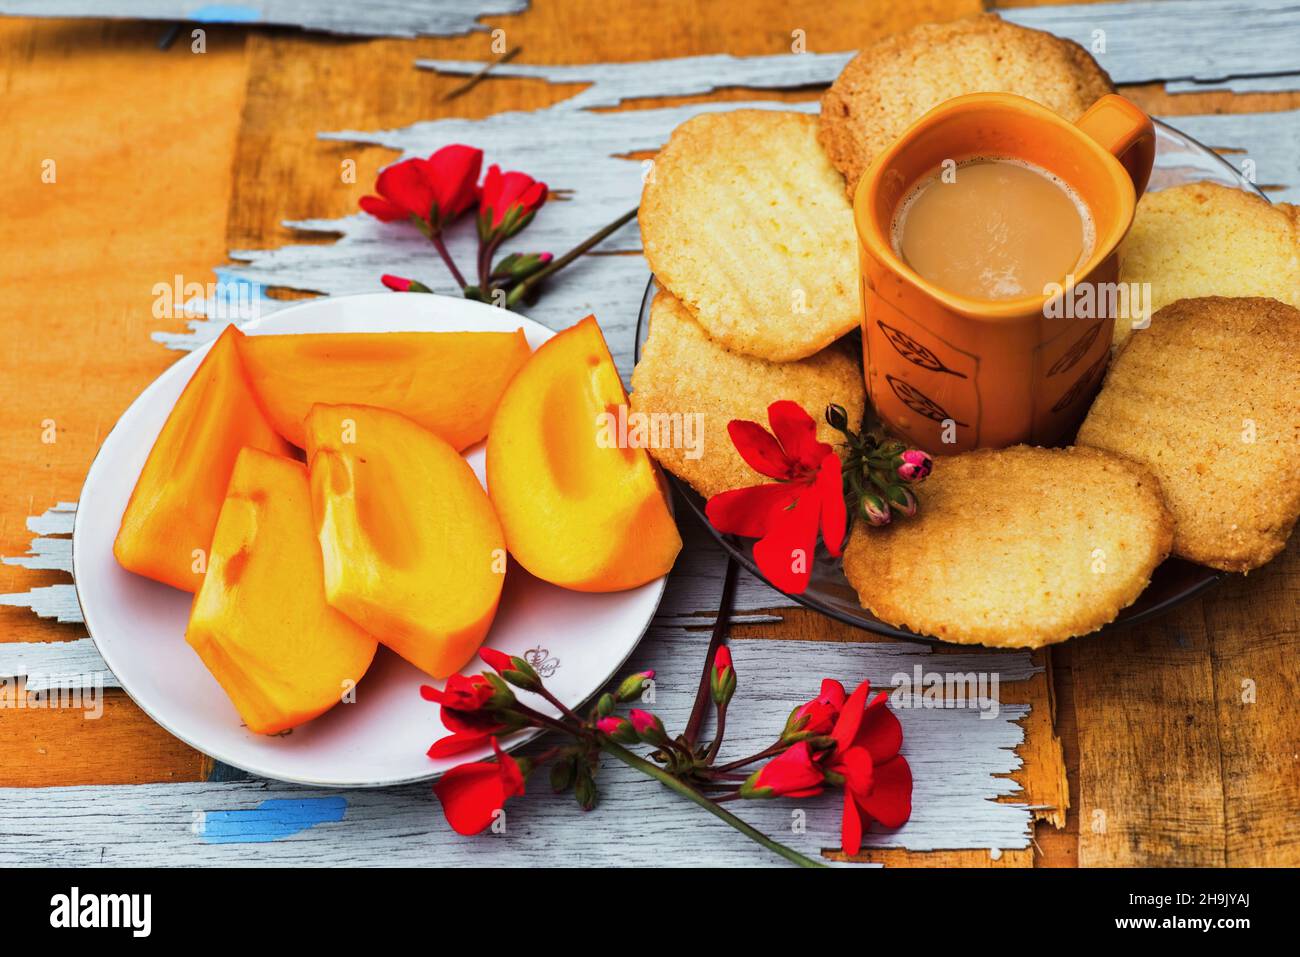 Fruits kaki tranchés sur une assiette, biscuit au beurre, tasse de café orange et fleur rouge sur table en bois rayée.Préparation de nourriture douce de couleur orange. Banque D'Images